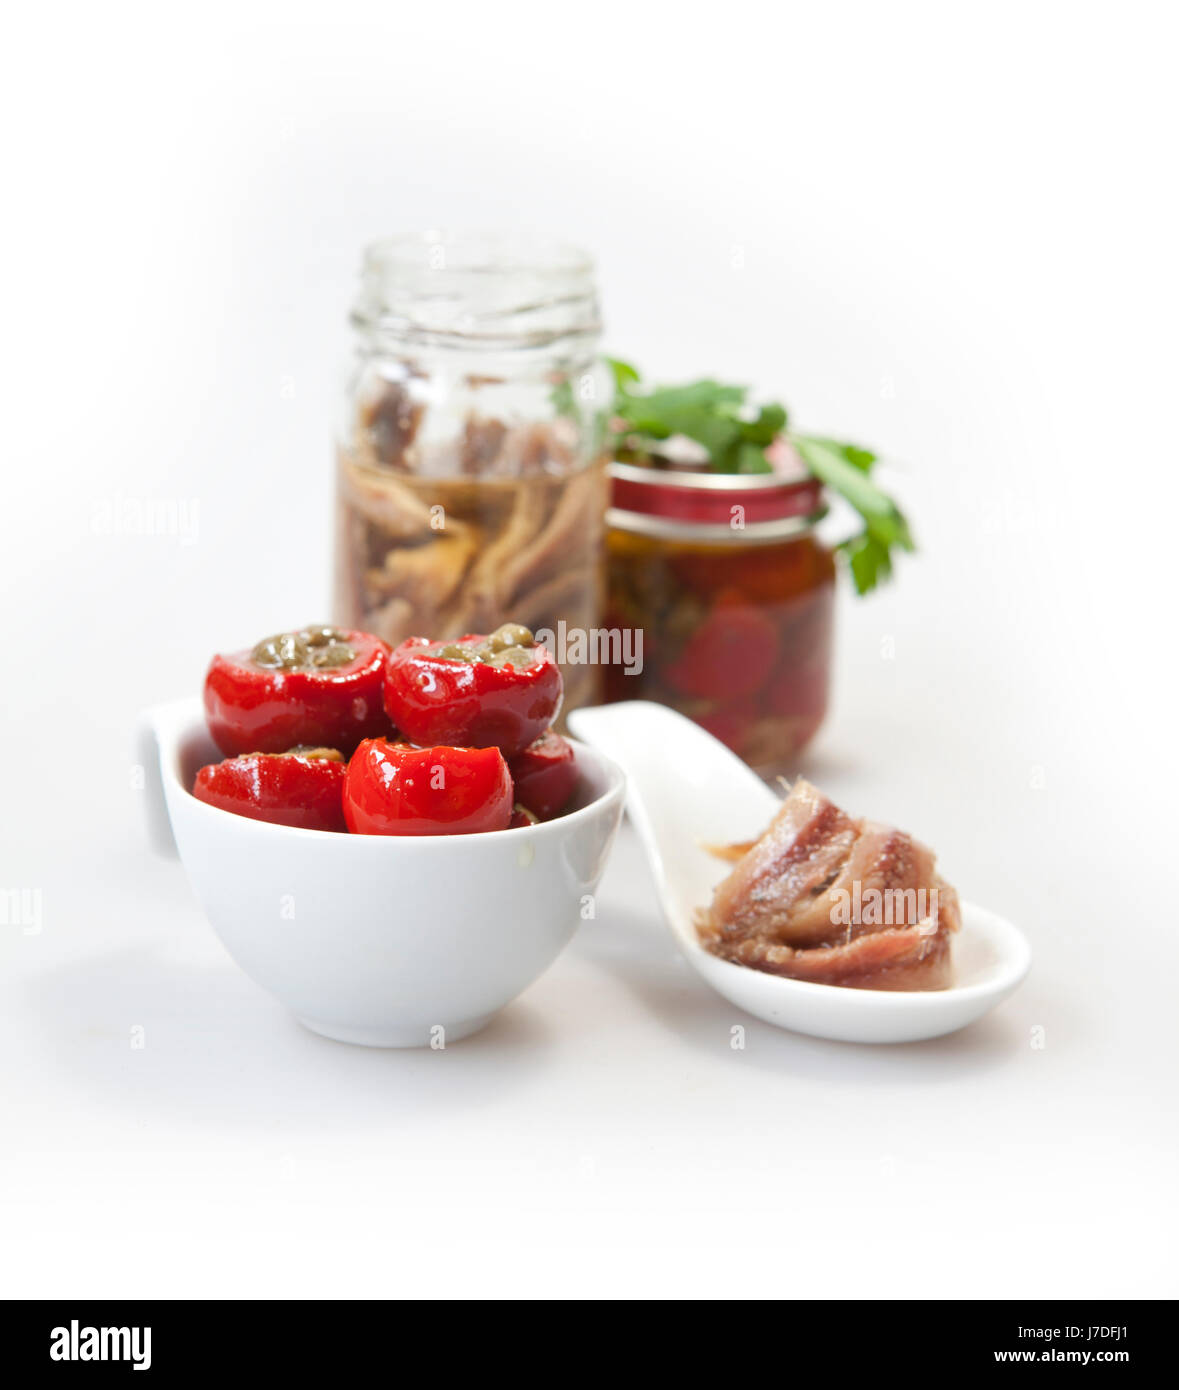 Sex poivrons paprika anchois fruits de mer Poissons aliment alimentaire gastronomie cuisine faire bouillir Banque D'Images